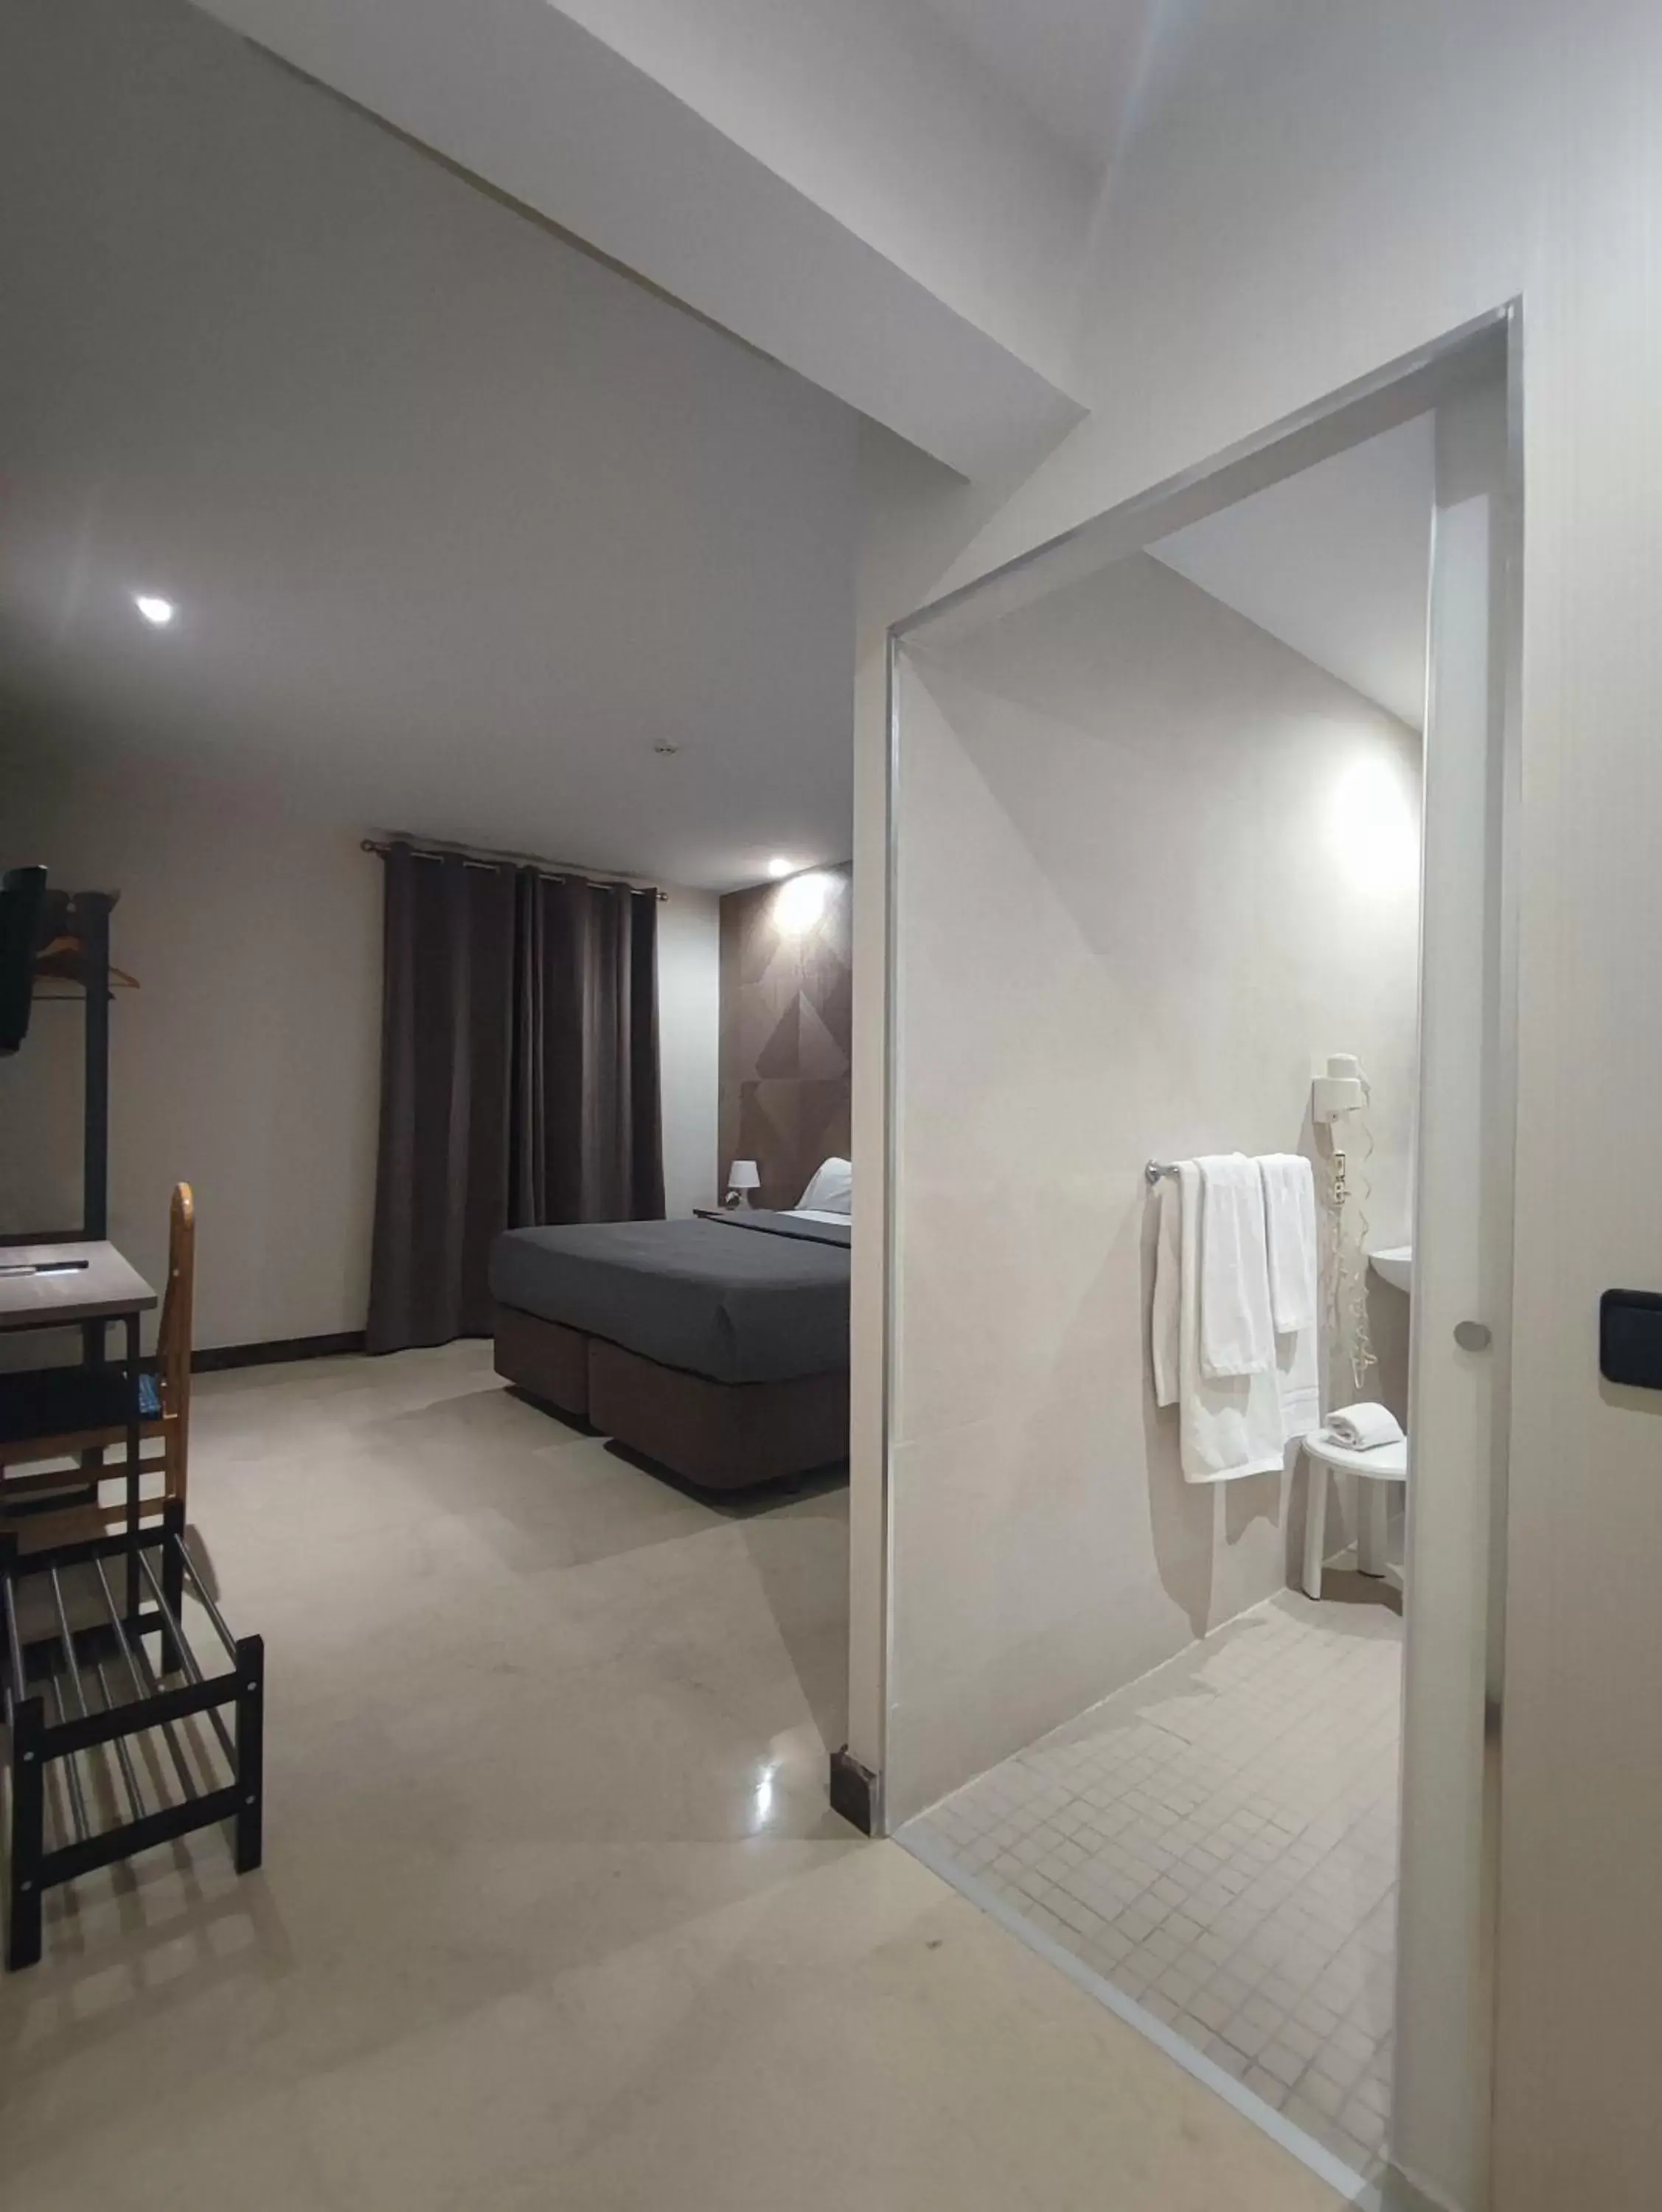 Bedroom, Bathroom in Hotel Ciudad de Navalcarnero